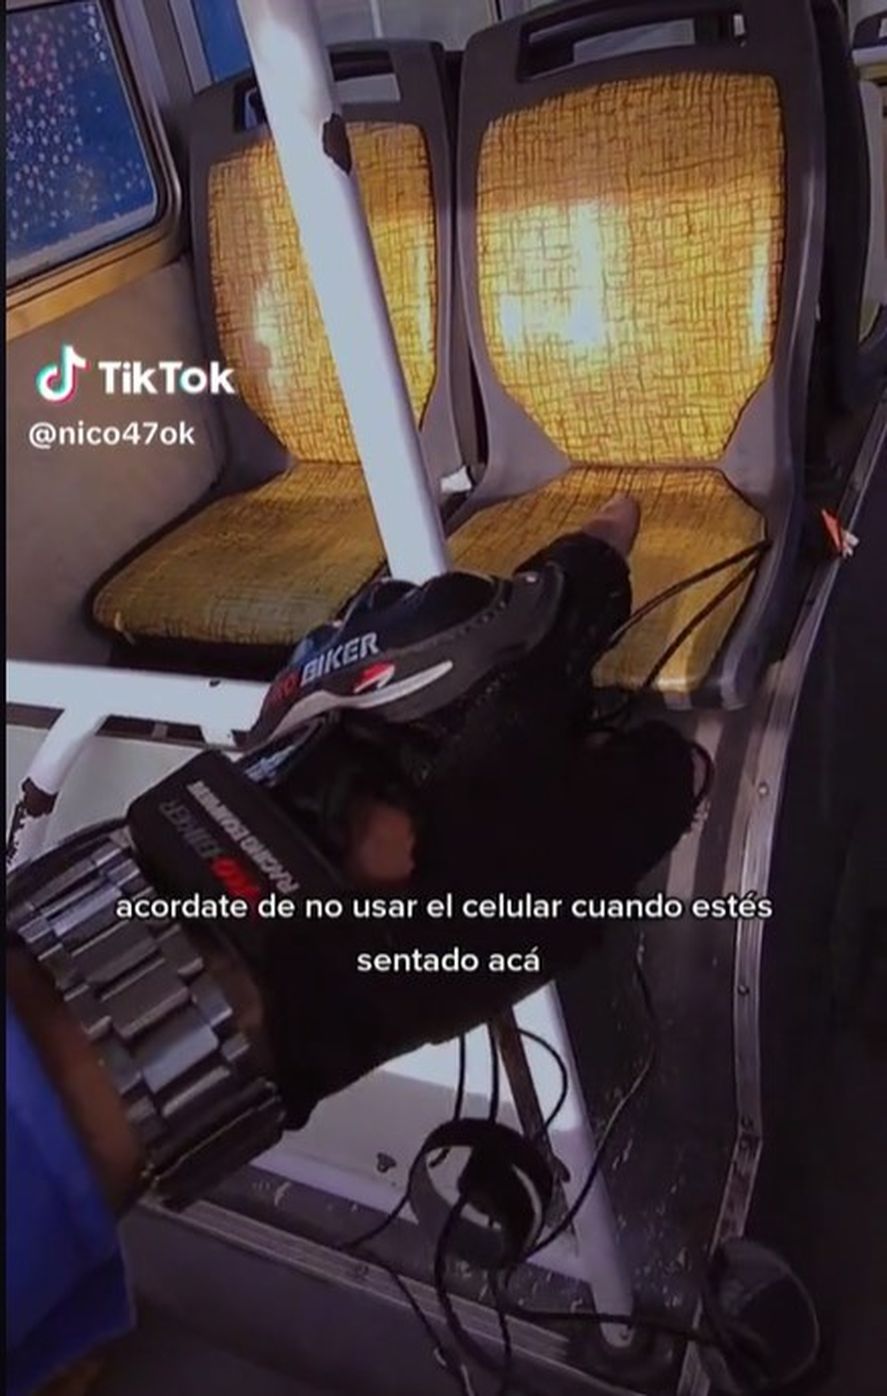 Colectivero realizó un tutorial antirobo para viajar tranquilo: mirá el video